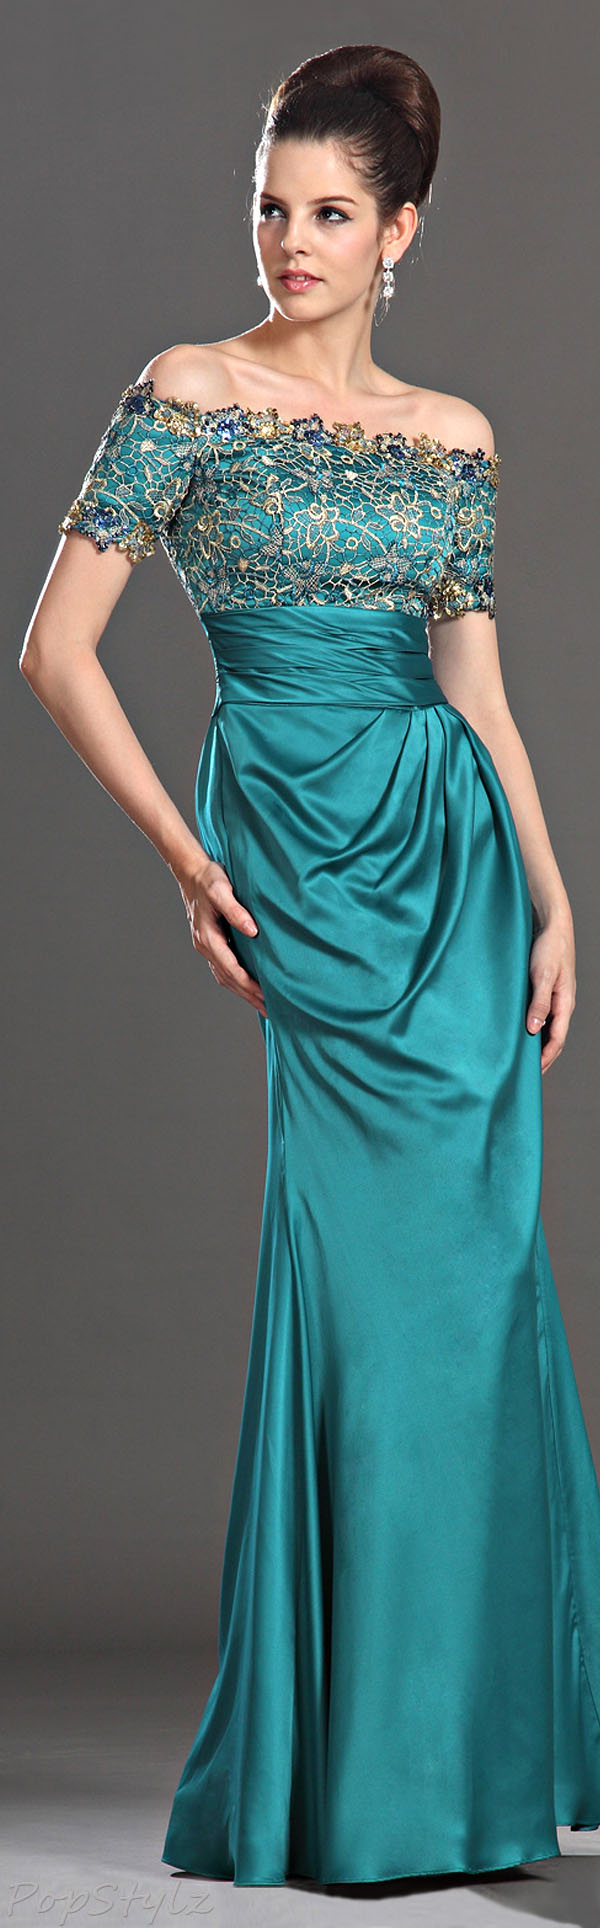 eDressit Elegant Beaded Gown